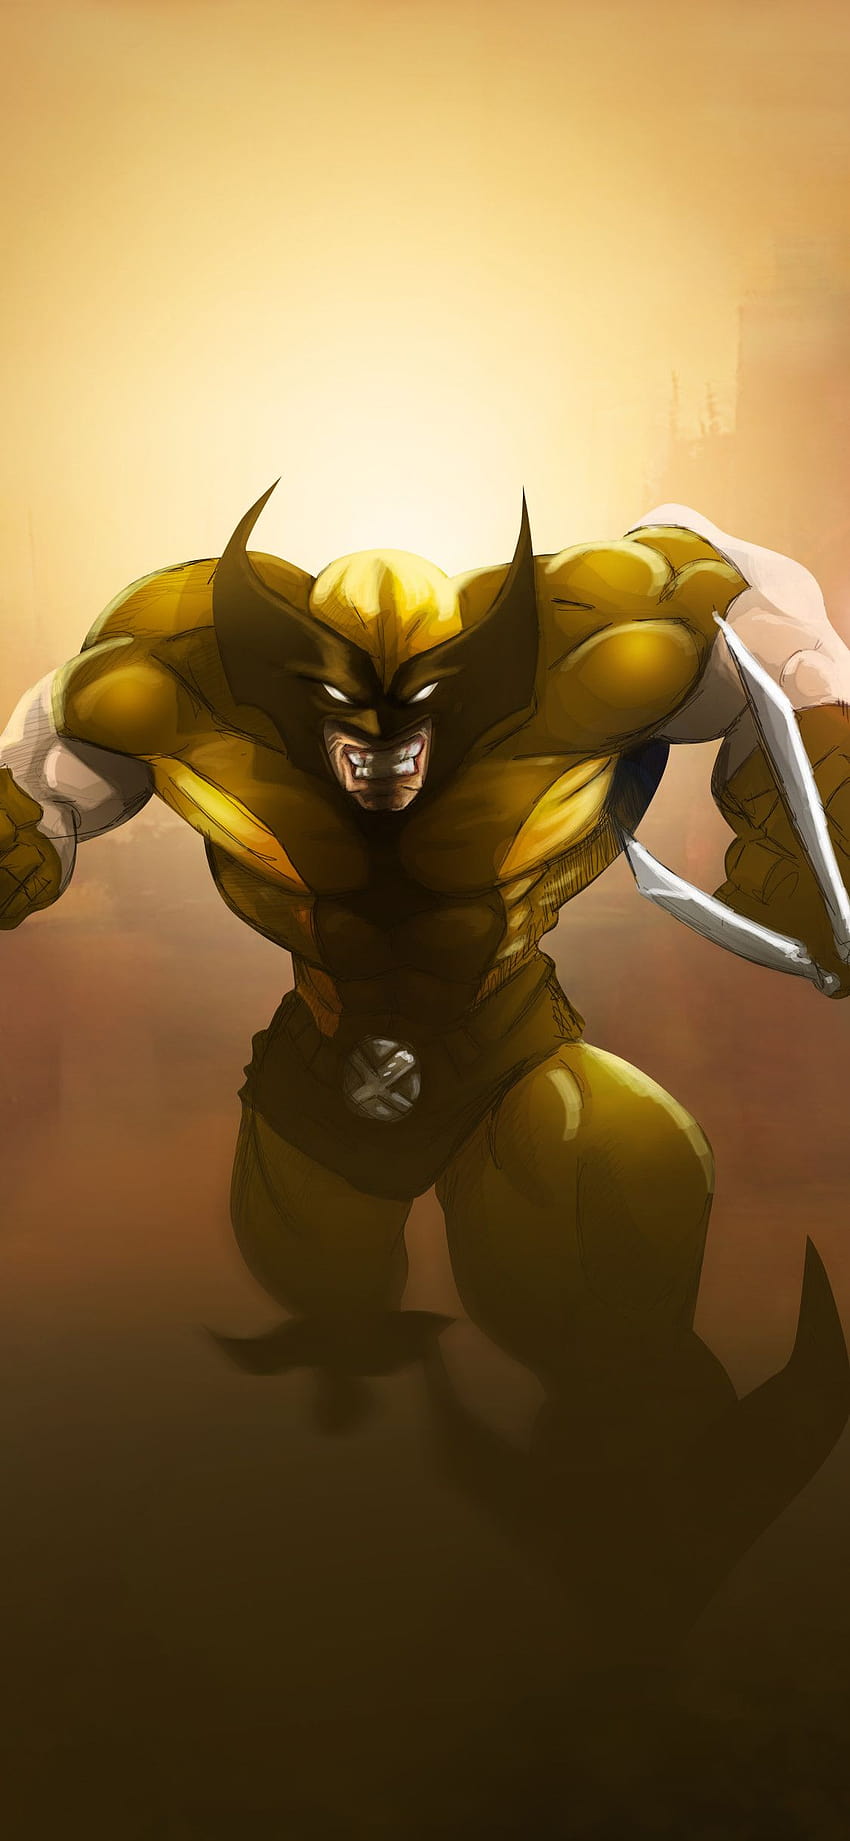 XMen Wolverine iPhone Wallpapers  Top Free XMen Wolverine iPhone  Backgrounds  WallpaperAccess